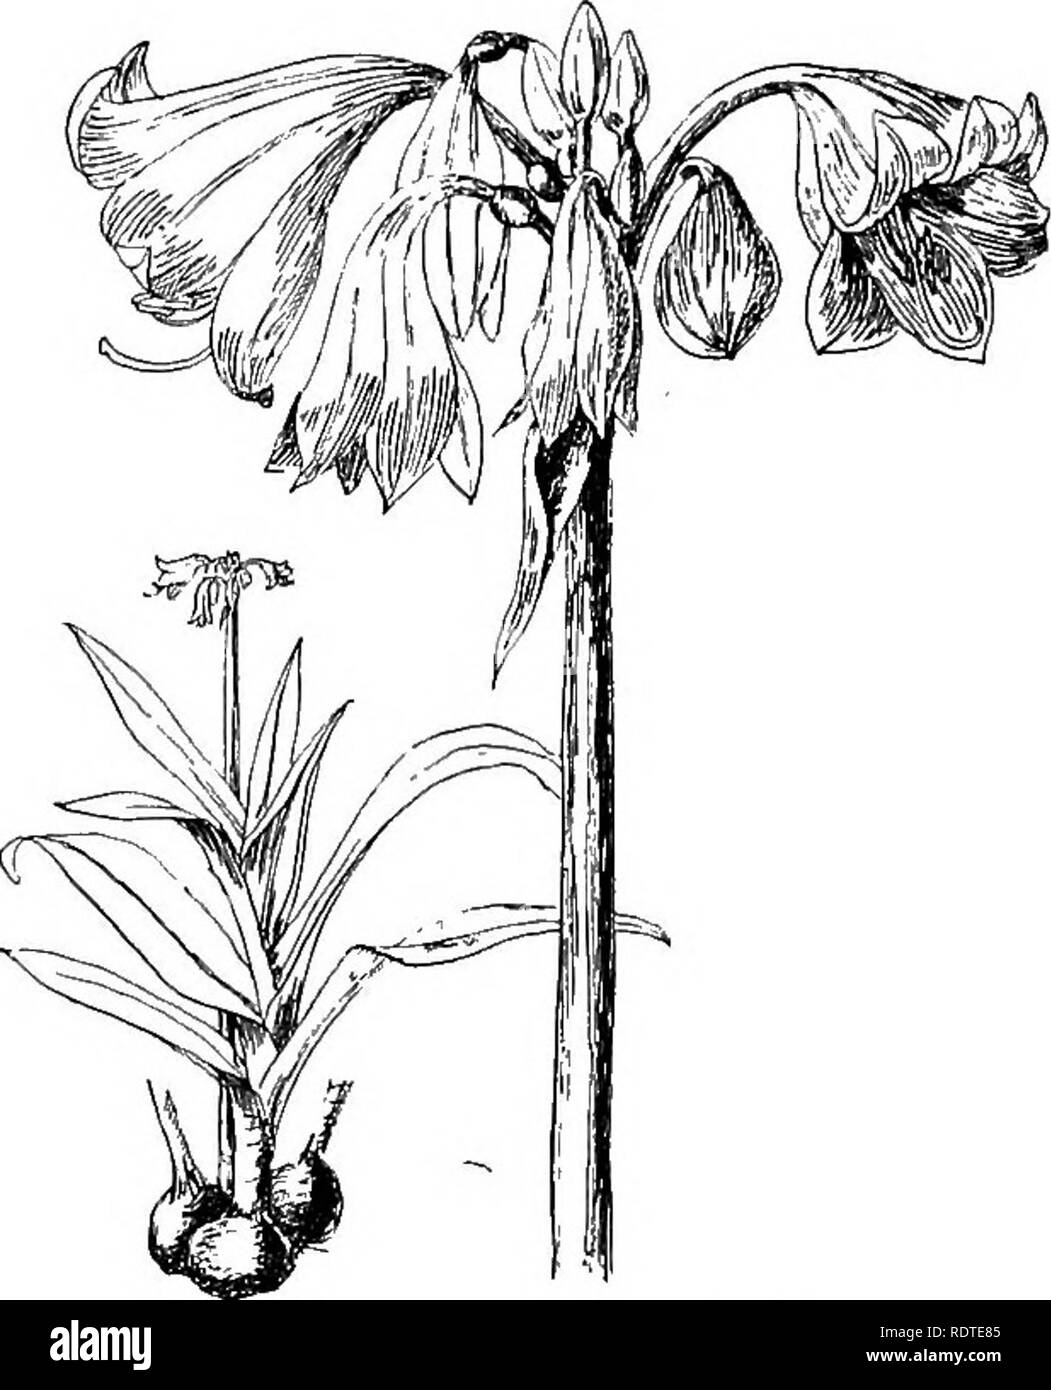 . L'ampoule du livre ; ou, pour les plantes tubéreuses et bulbe plein air, cuisinière, et les émissions, contenant des renseignements qu'à des descriptions, de la culture, la propagation, etc., de plantes de toutes les régions du monde ayant les oignons, bulbes, tubercules, rhizomes ou exclus (orchidées). Ampoules (plantes). Le LIVRE CKINUM CRINUM AMPOULE de grandes fleurs blanches, généralement rincée avec le dos rouge, sont portées sur un pédoncule arrondie d'environ 1 m de hauteur. {Bot. Mag. t. 661 rouge. Lil. t. 347.) Il existe plusieurs formes de cette espèce, y compris l'alhwm, avec des fleurs blanc pur ; striatum, blanc rayé de rose ; et Farinianum, du Ka Banque D'Images